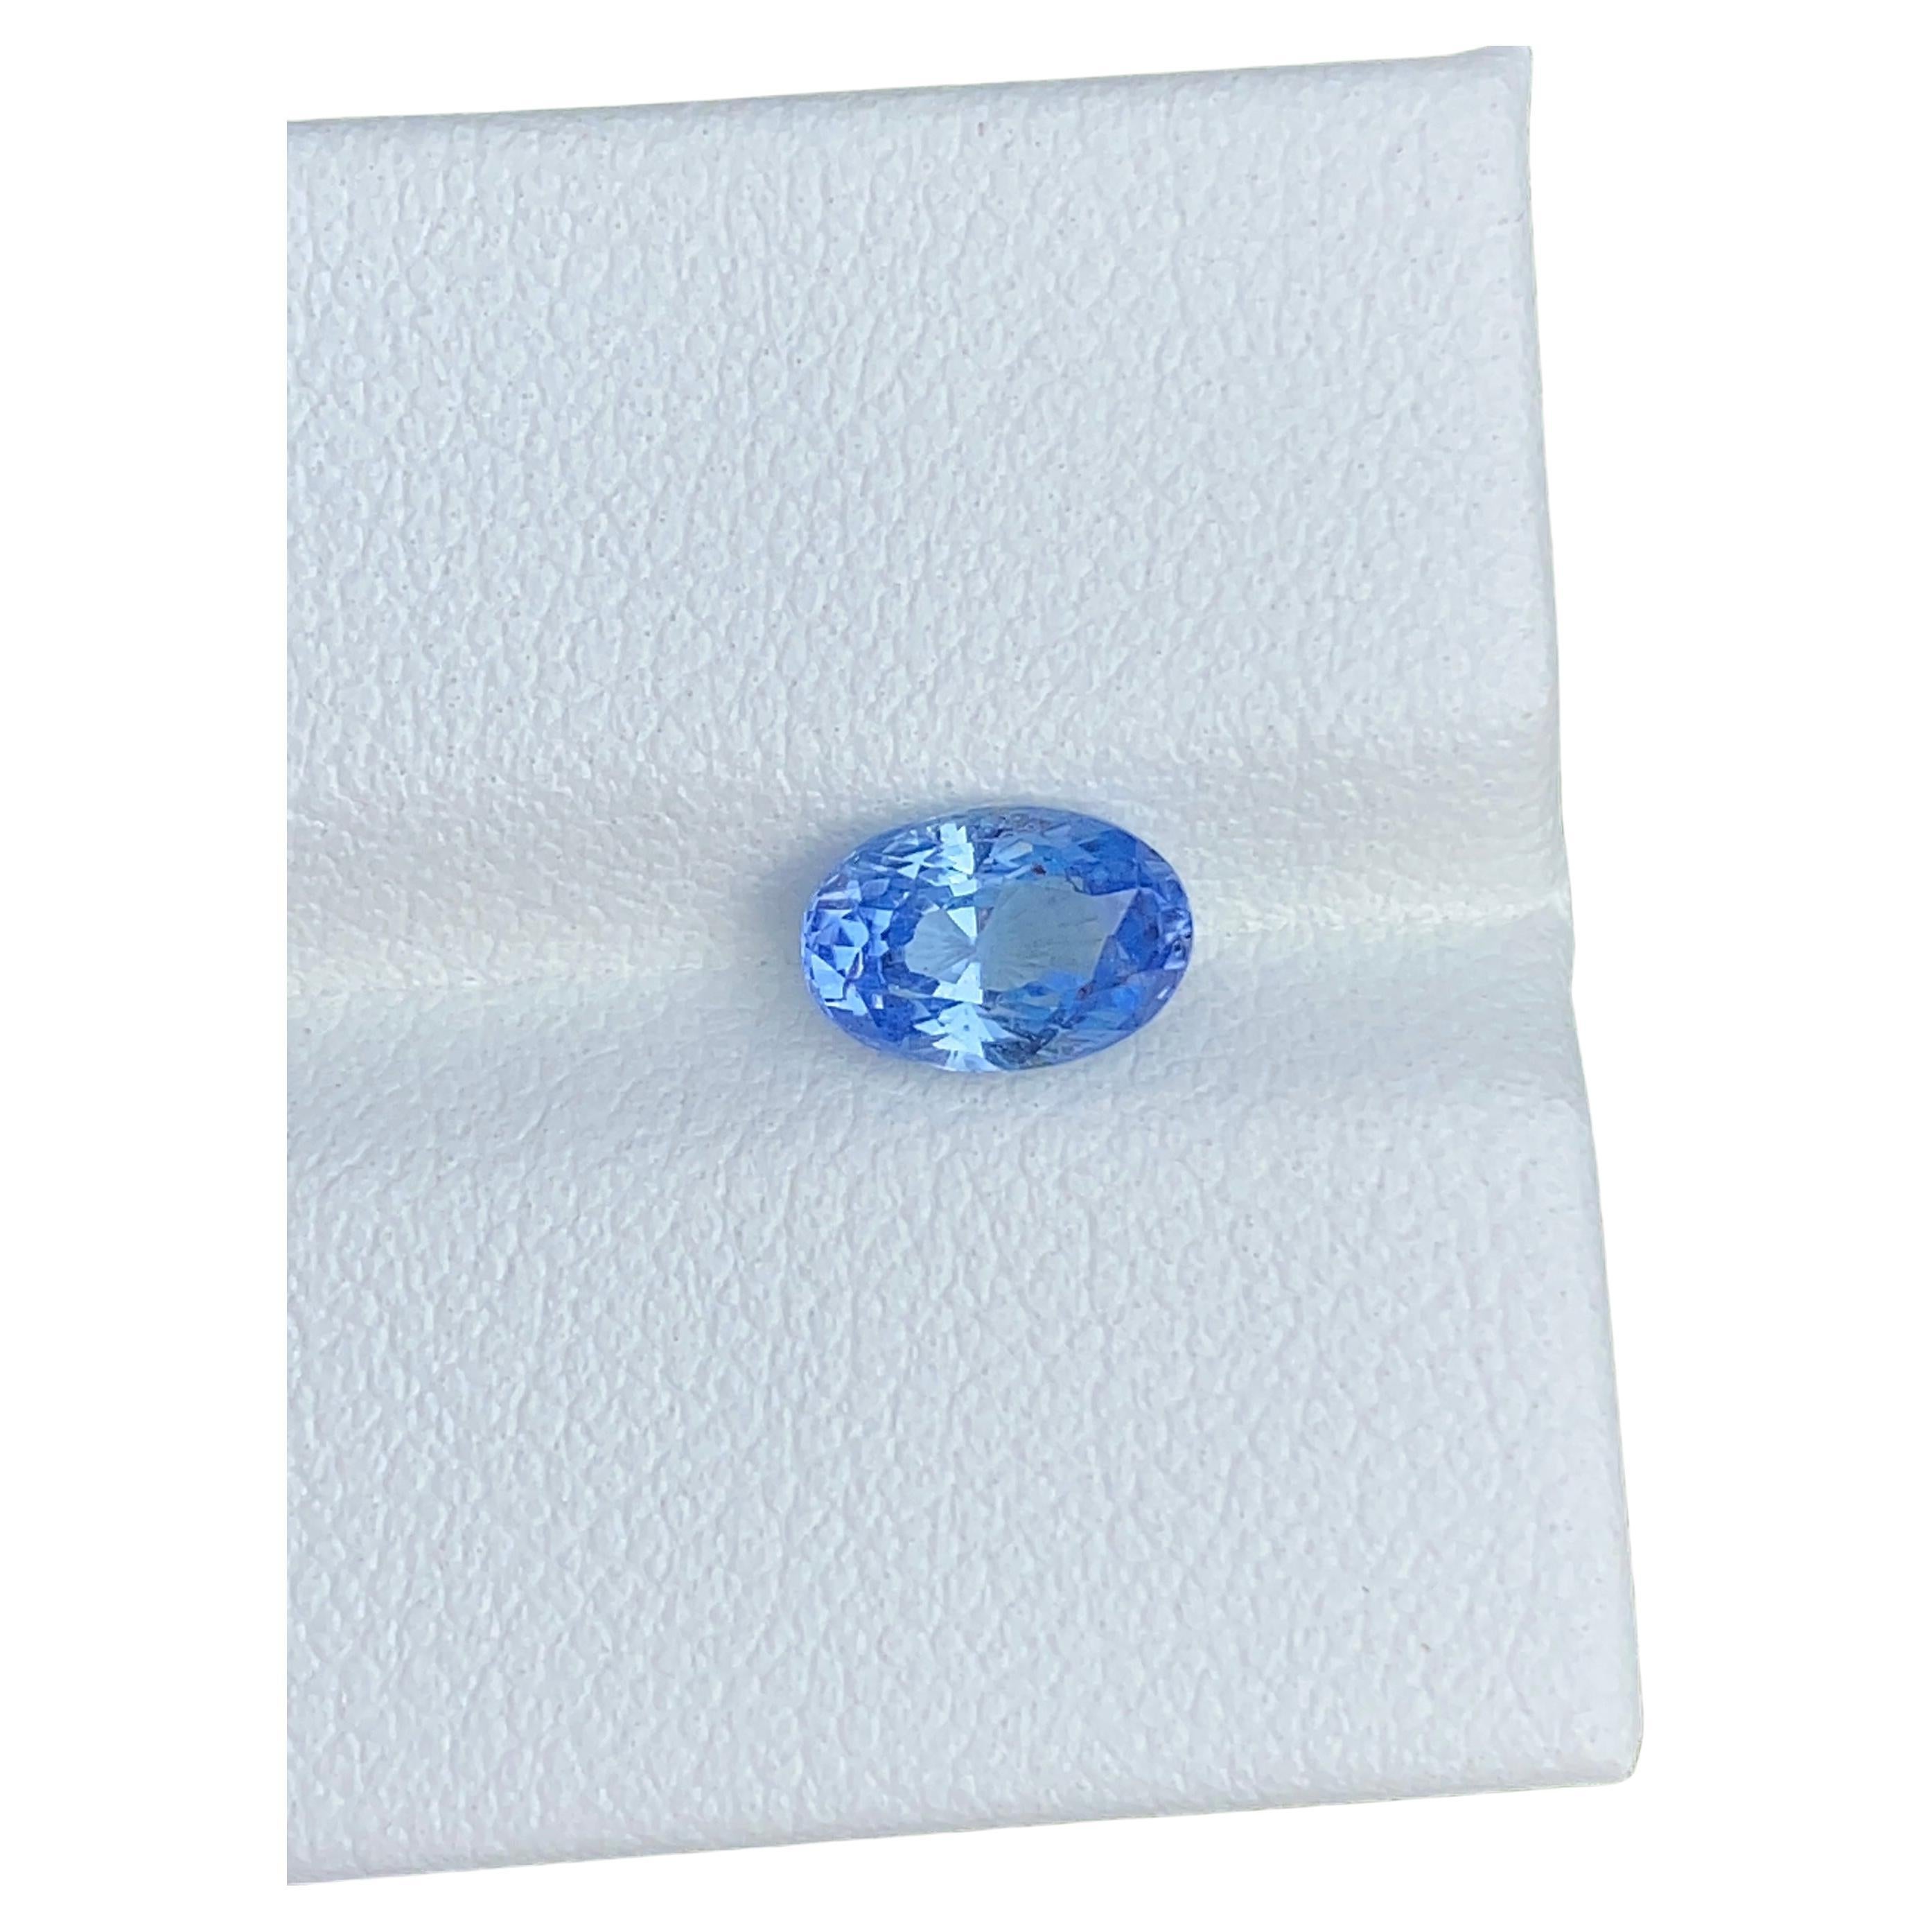 Certified Unheated Blue Sapphire Ring Edelstein 1,25 Karat Oval Edelstein Ceylon Herkunft